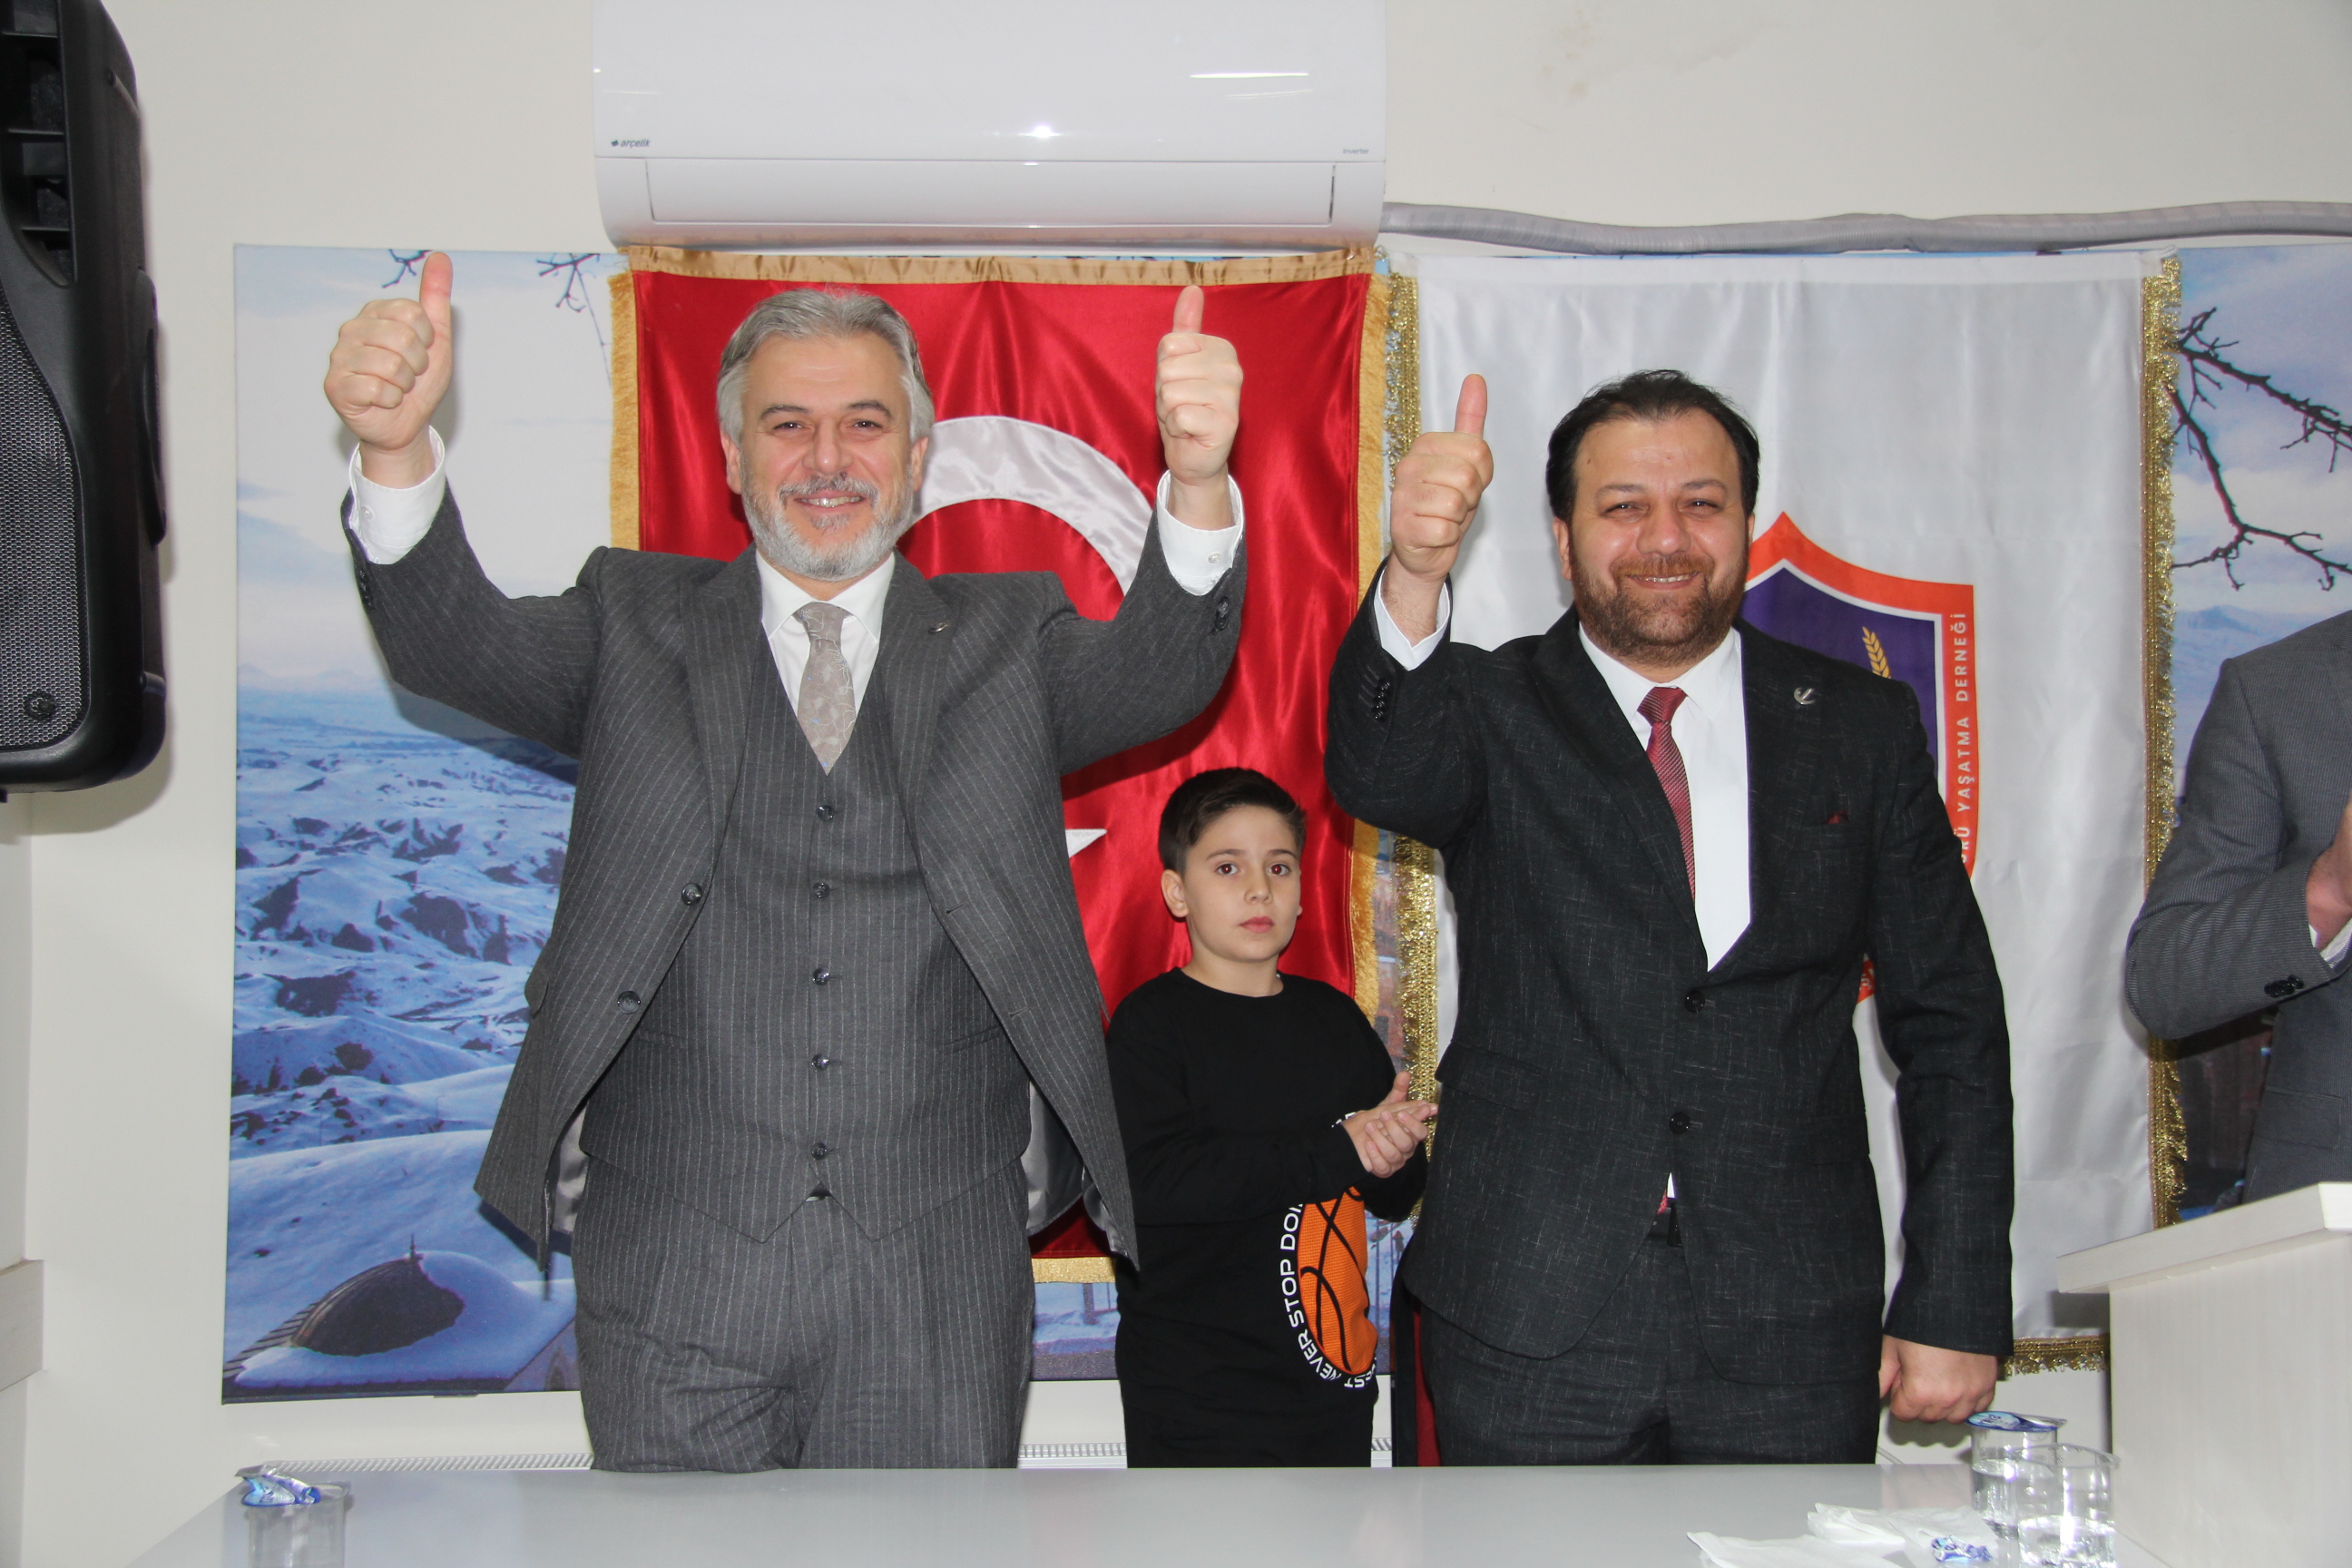 İBB Başkan Adayı Mehmet Altınöz ve Ataşehir Belediye Başkan Adayı Bülent Tüylü Milli Görüş İşareti yaptılar.